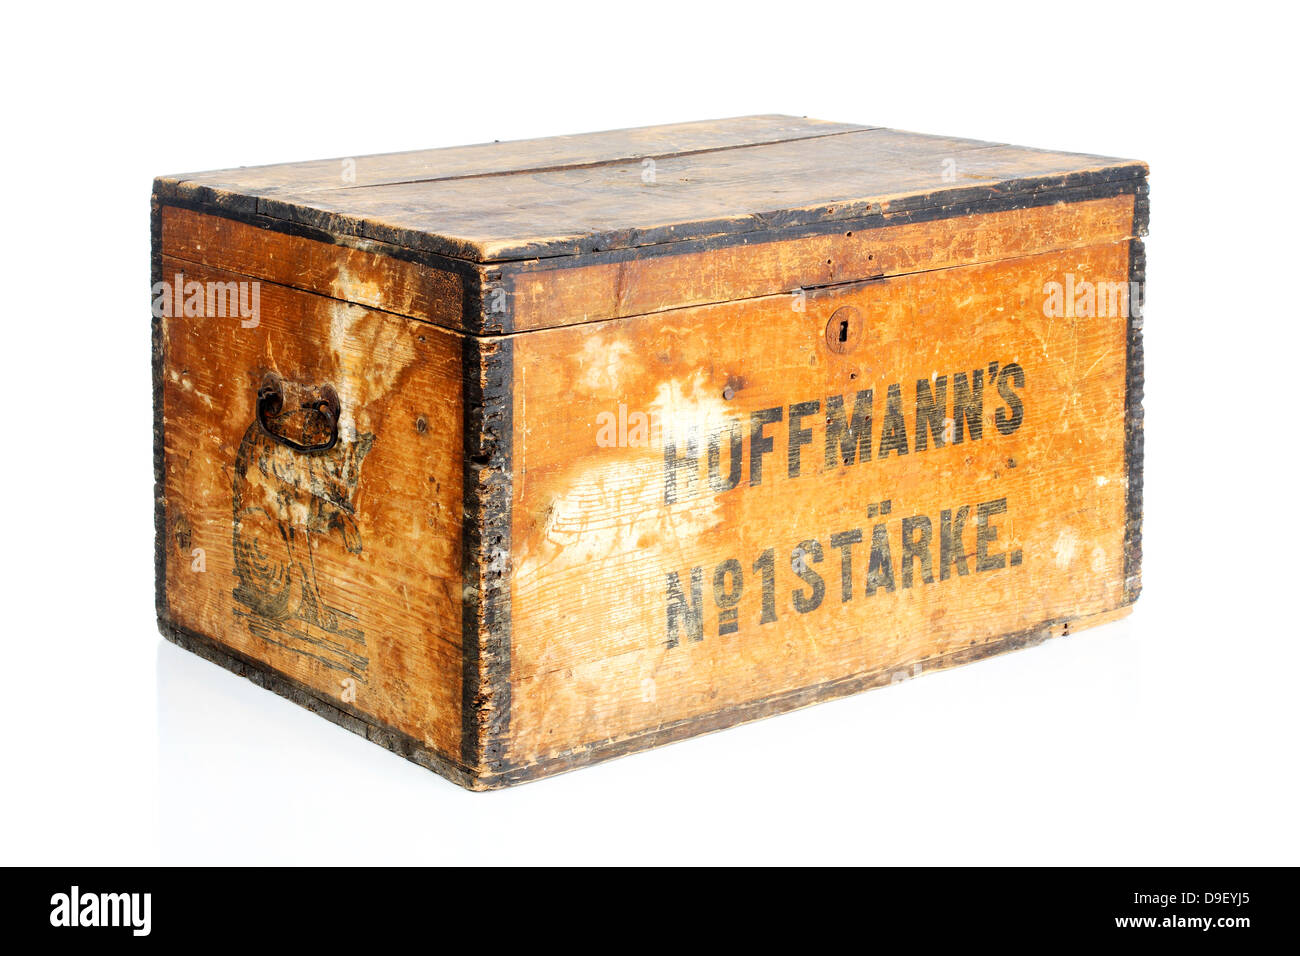 Vieille boîte en bois avec une vieille étiquette publicitaire boîte en bois avec Word dans la publicité Banque D'Images